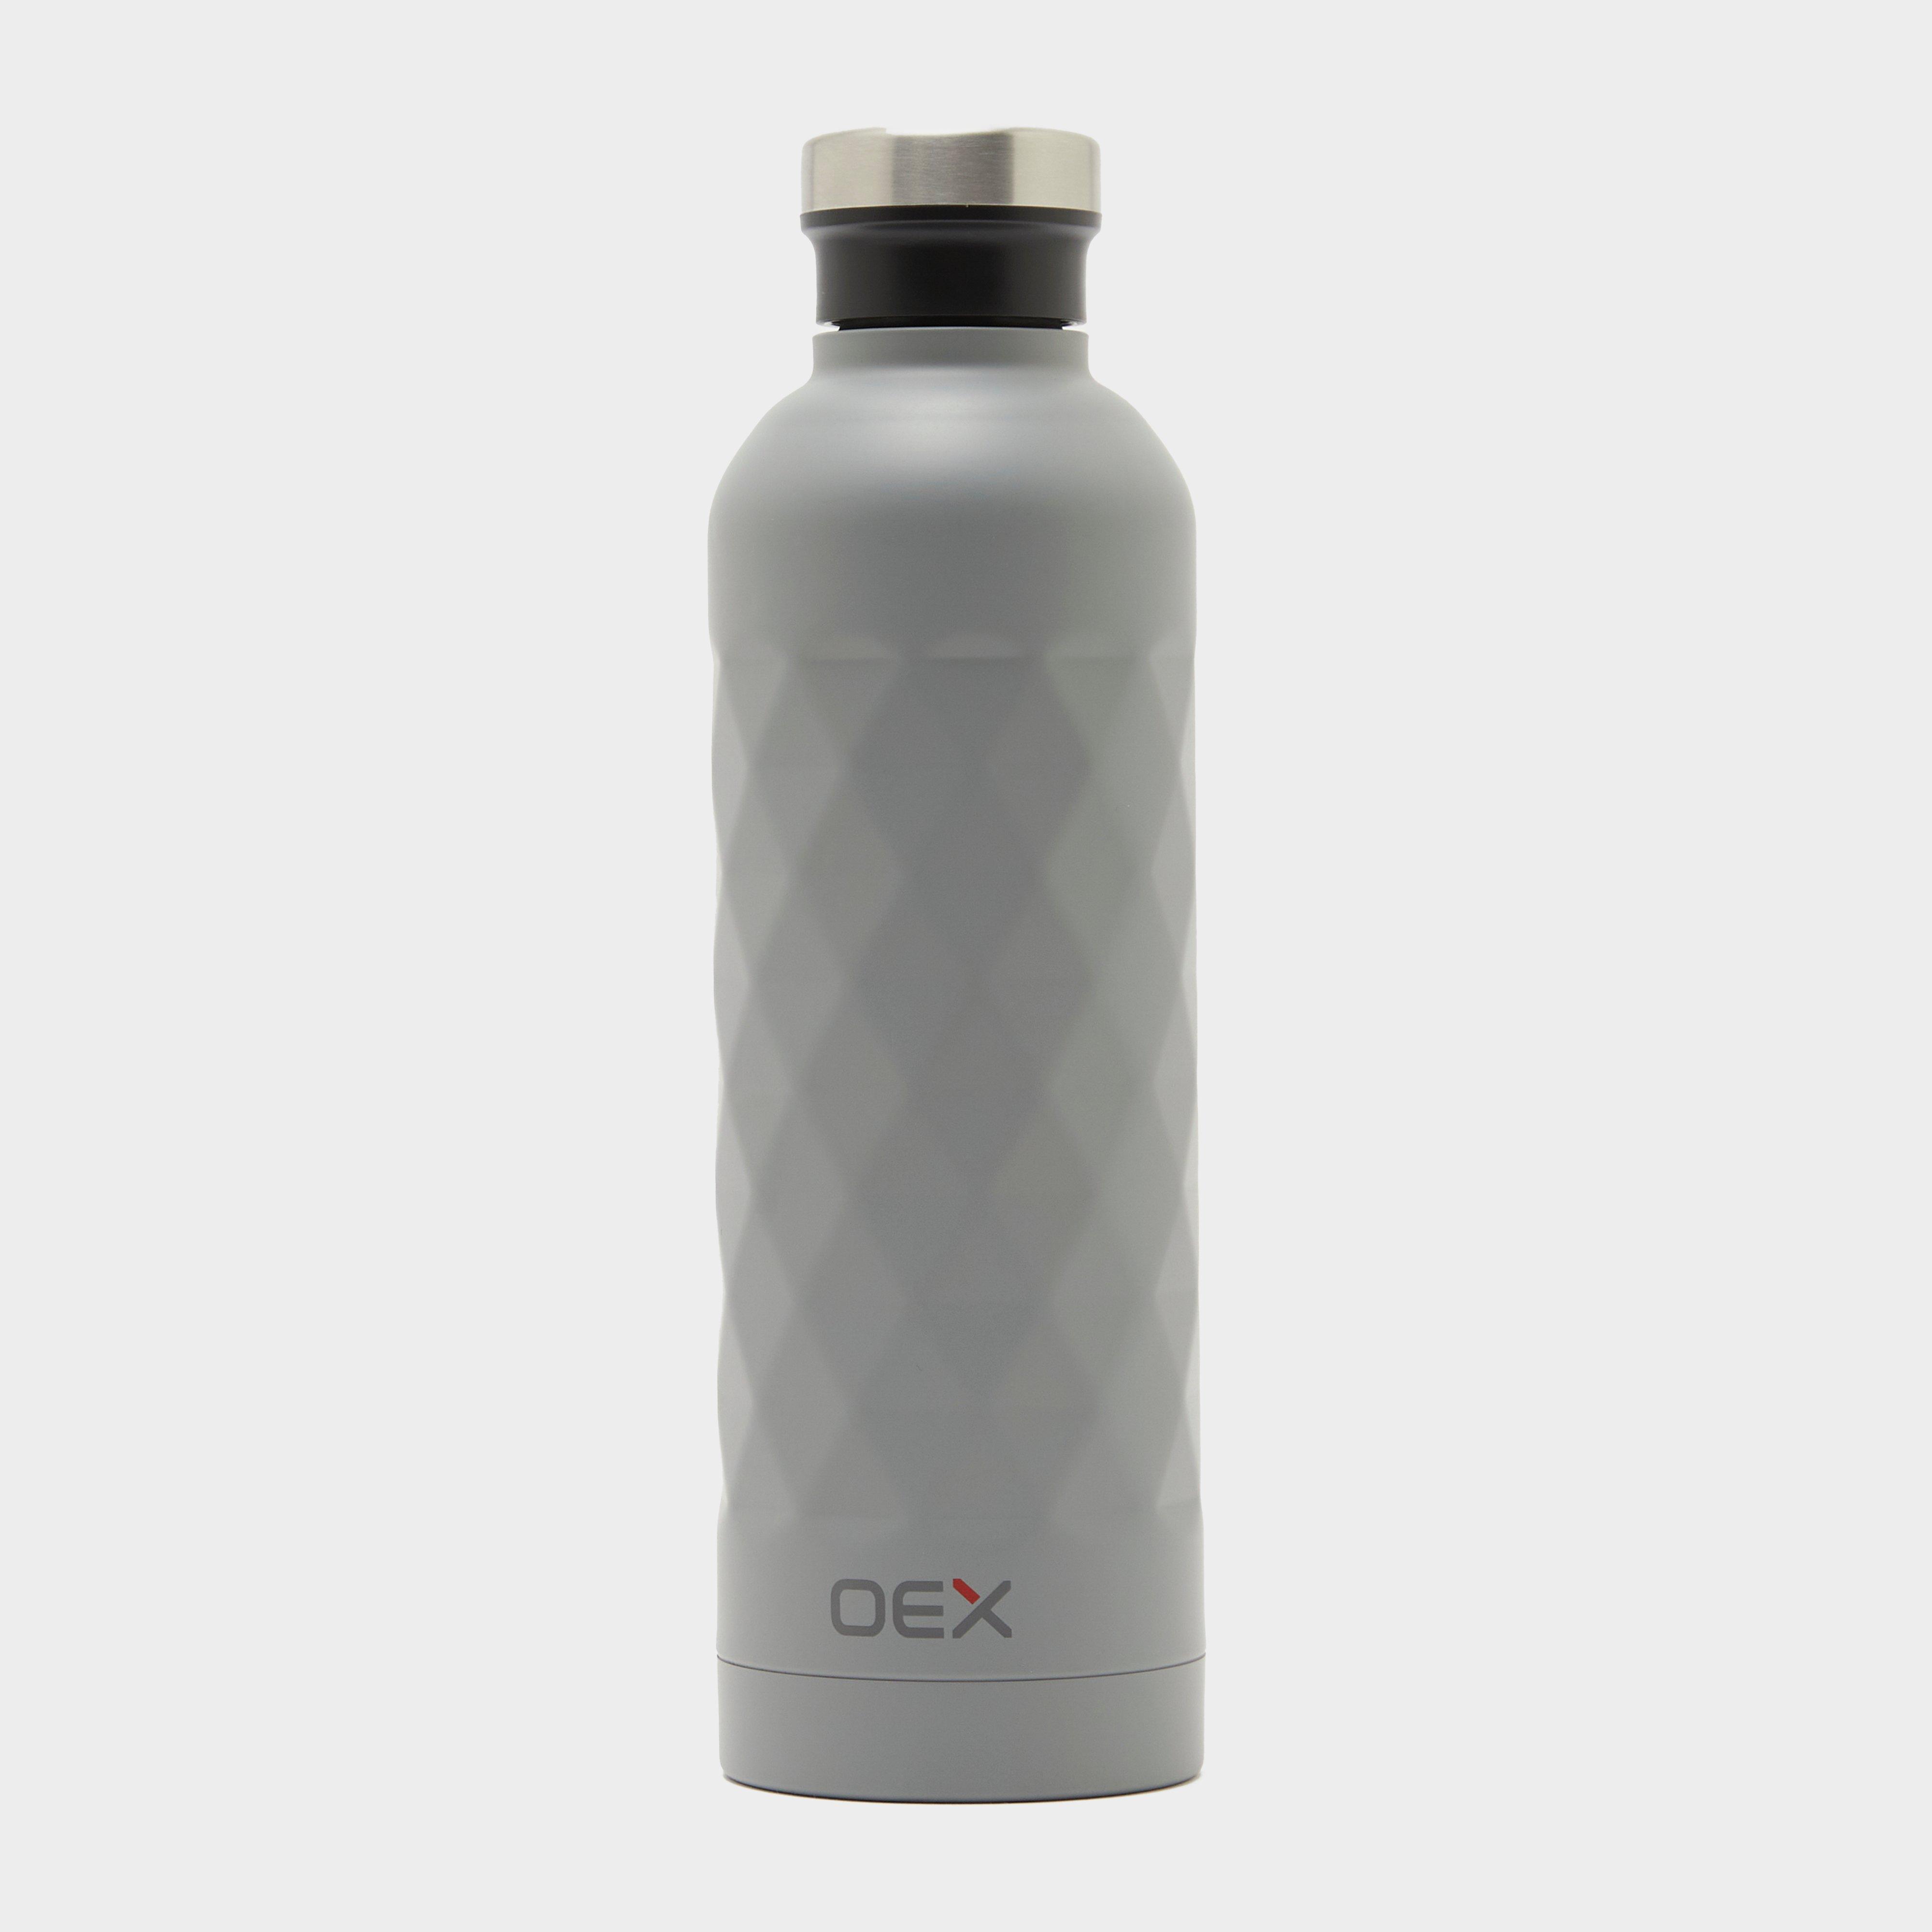 Oex 750ml Double Wall Bottle - Grey/grey  Grey/grey